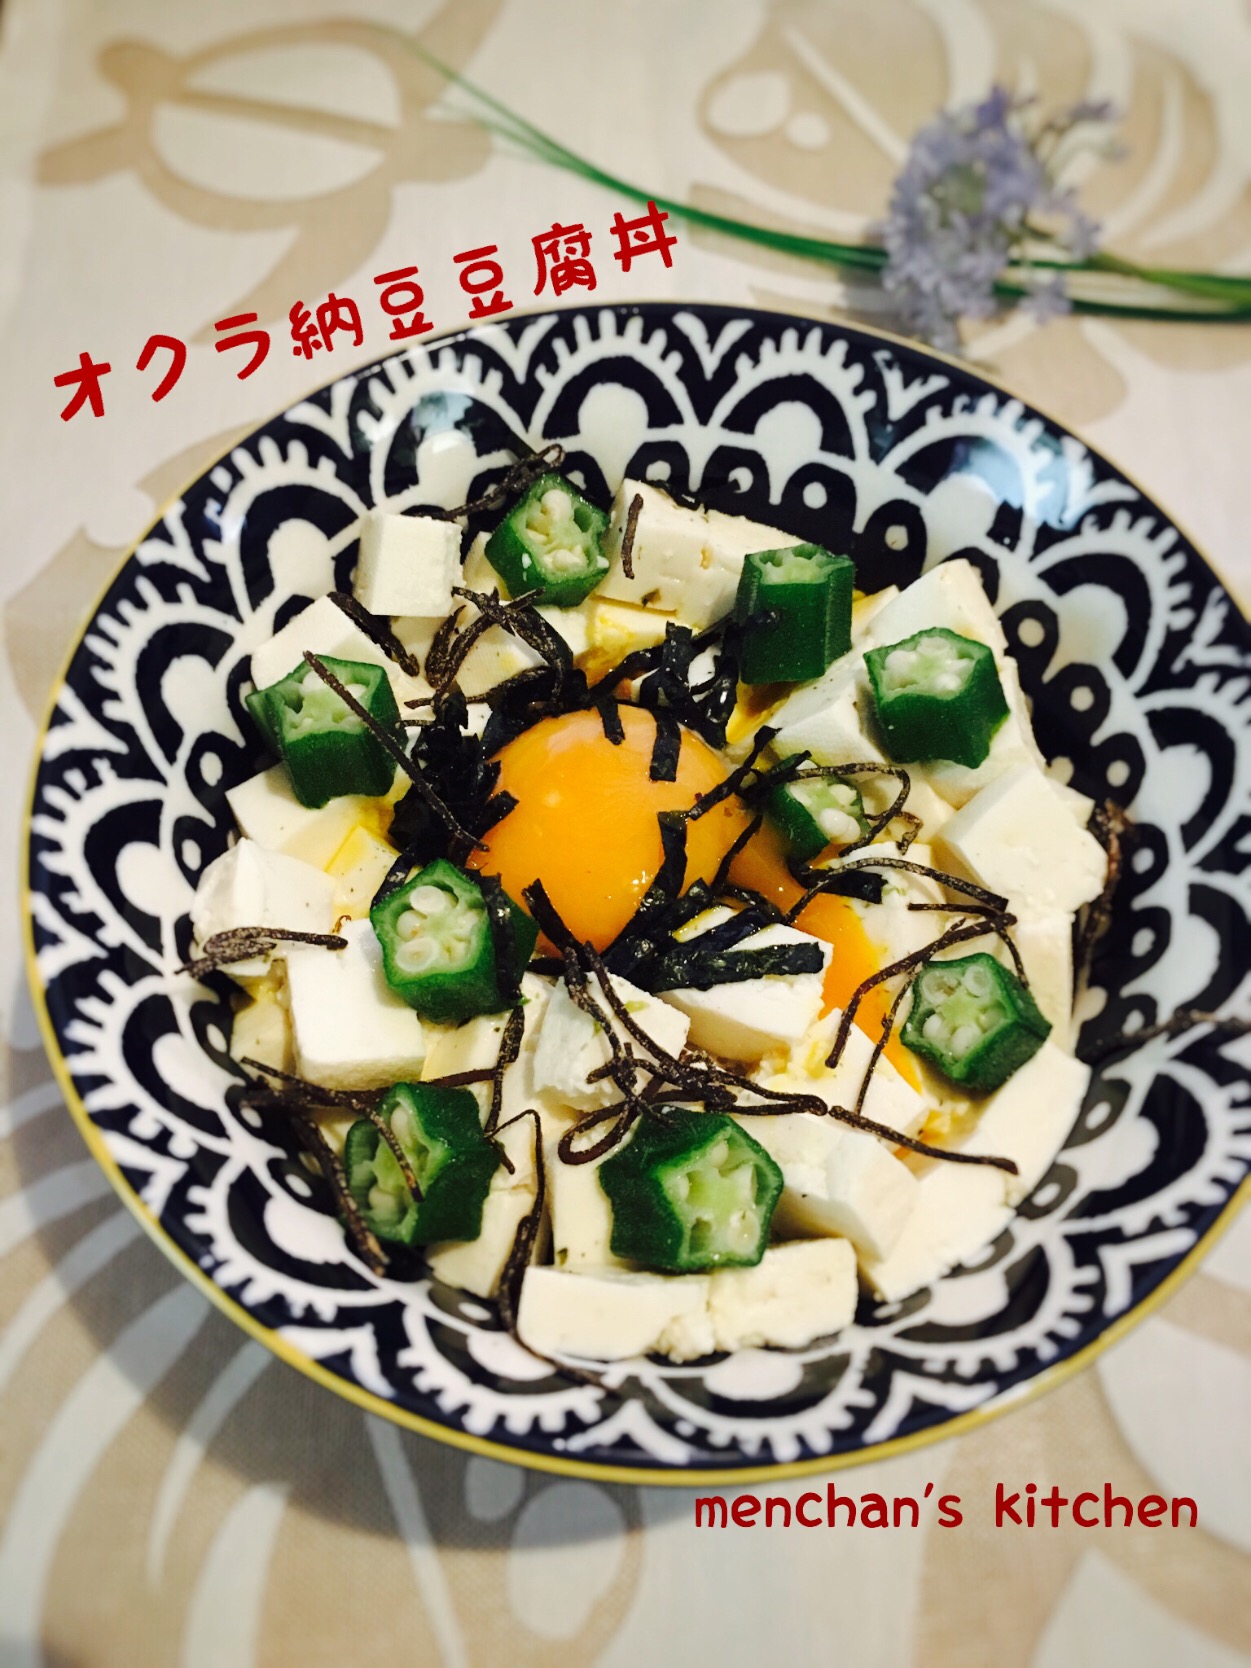 まりおちゃんのオクラ納豆豆腐丼 ダイエット料理グランプリ2019 ヤマサ醤油株式会社